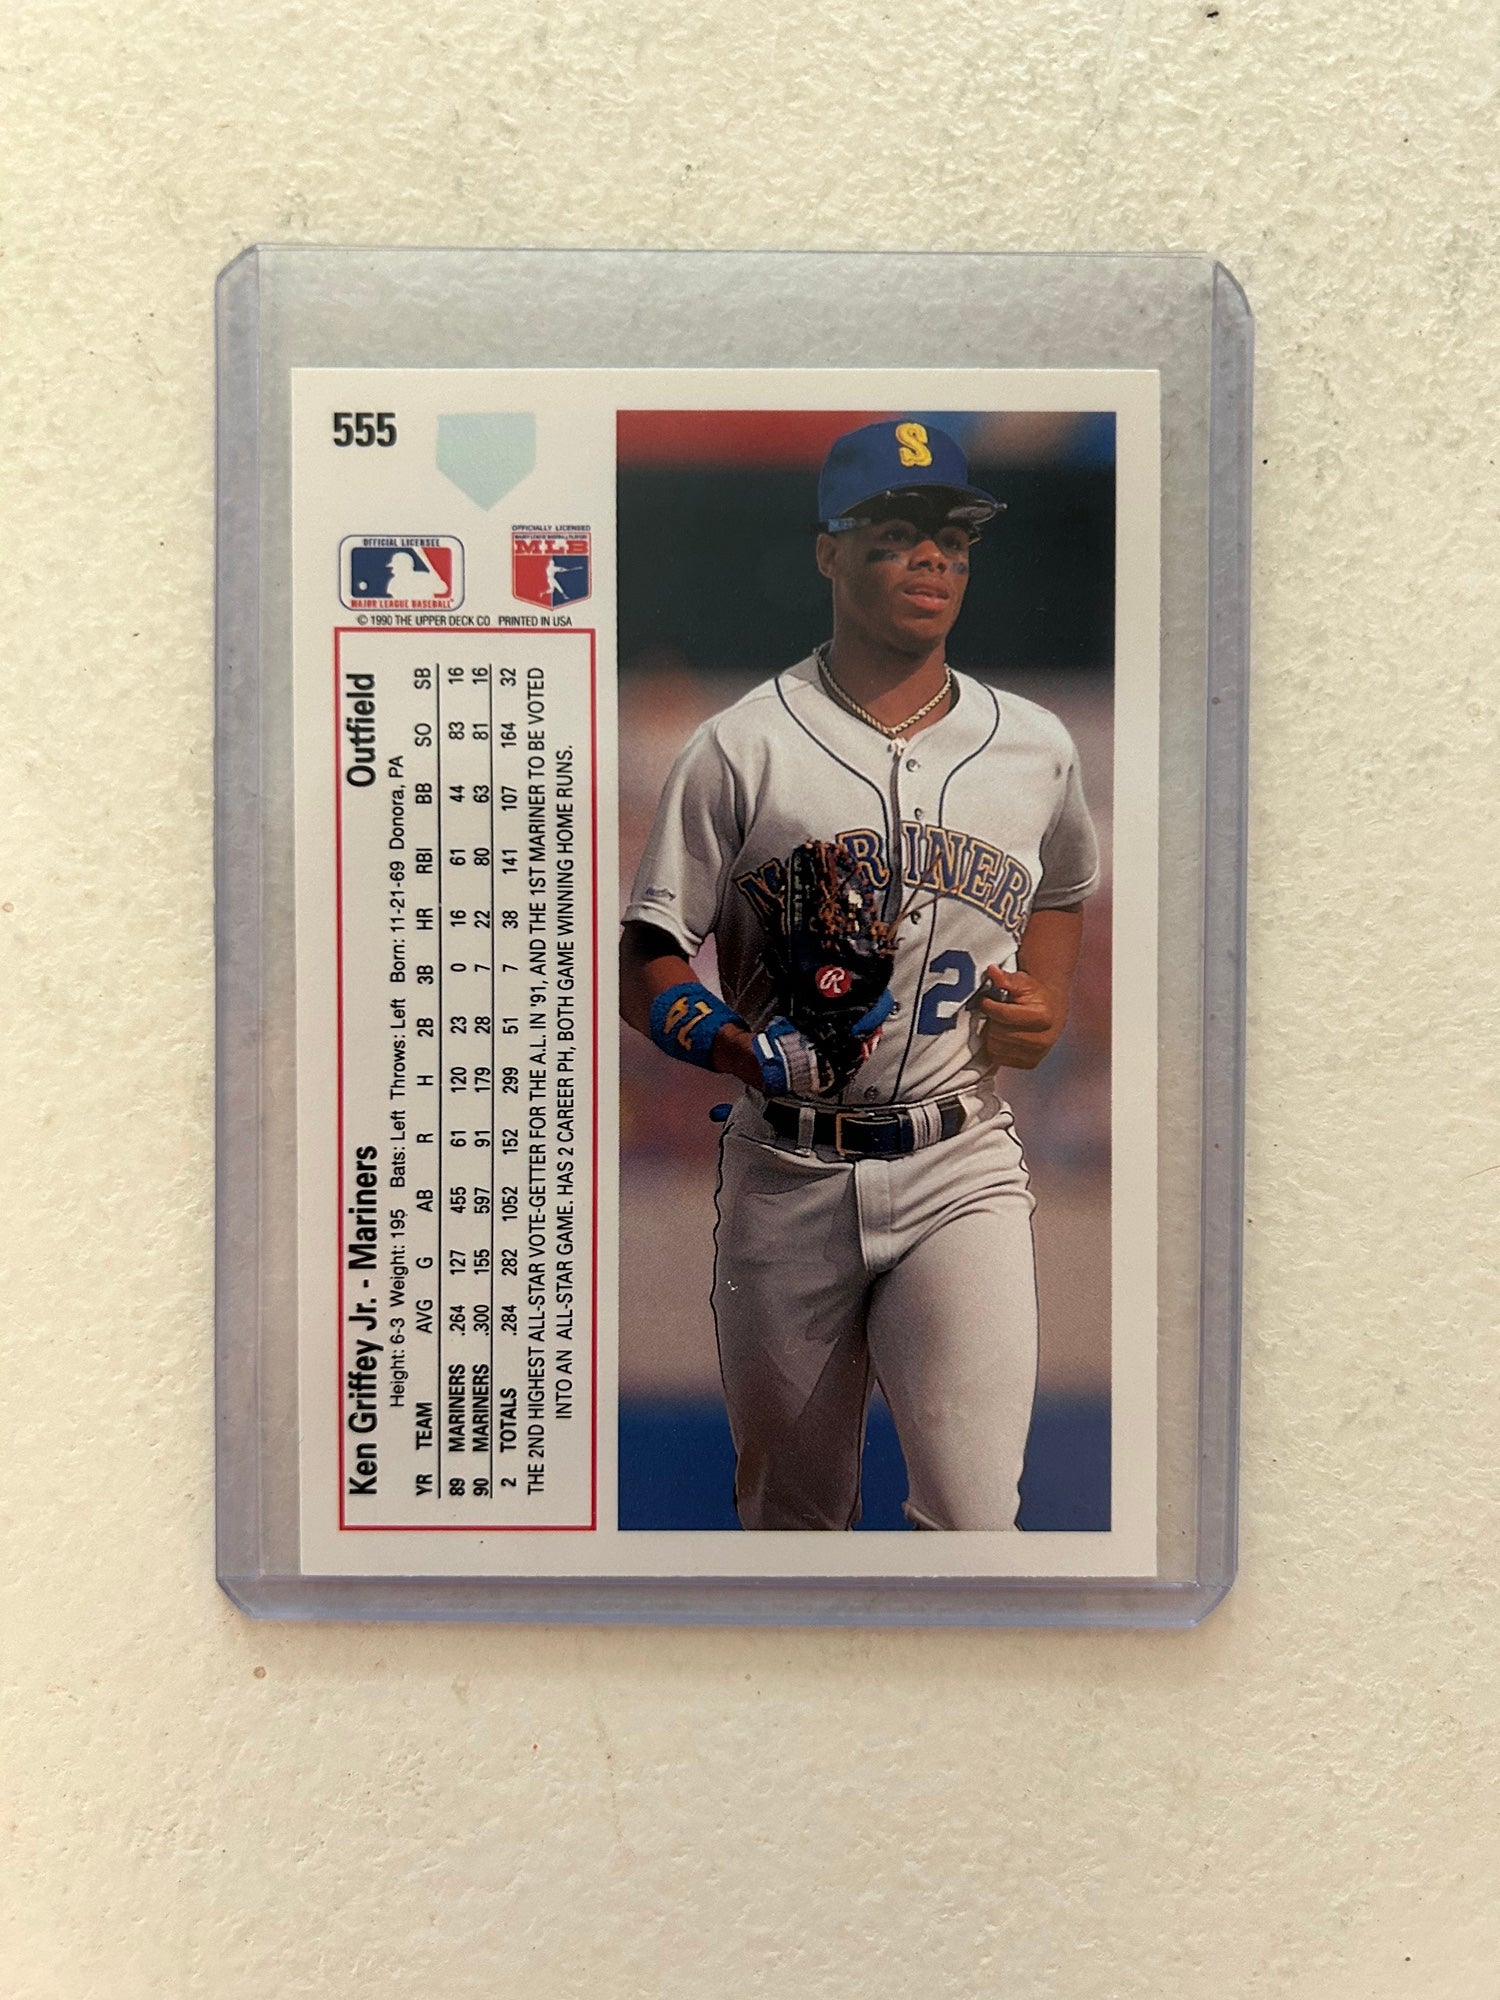 1991 Upper Deck Ken Griffey Jr. baseball card #555– HOF